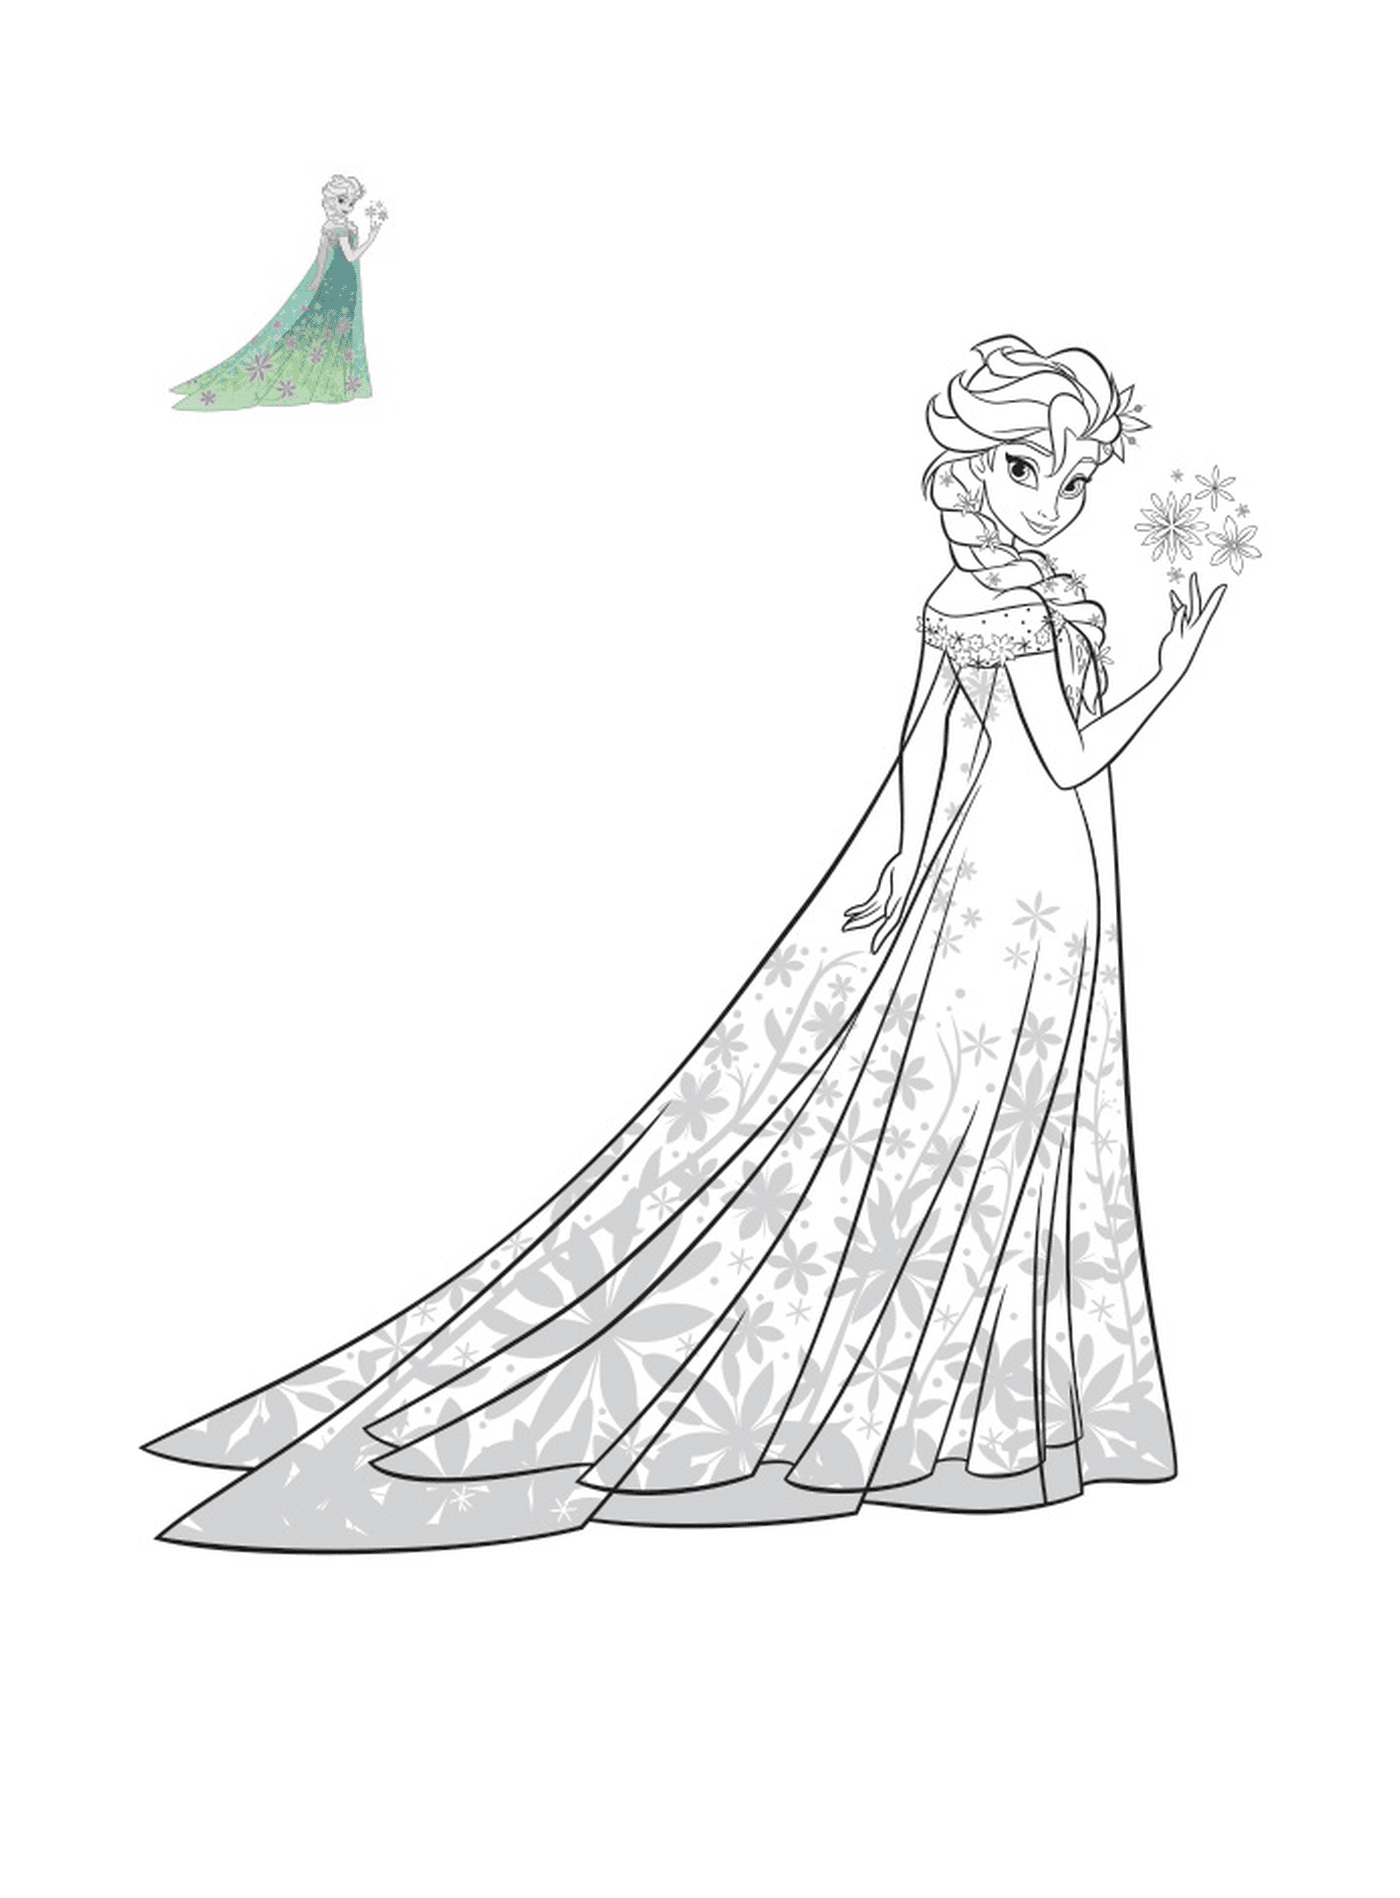  Elsa der Schneekönigin in einem exotischen Kleid 